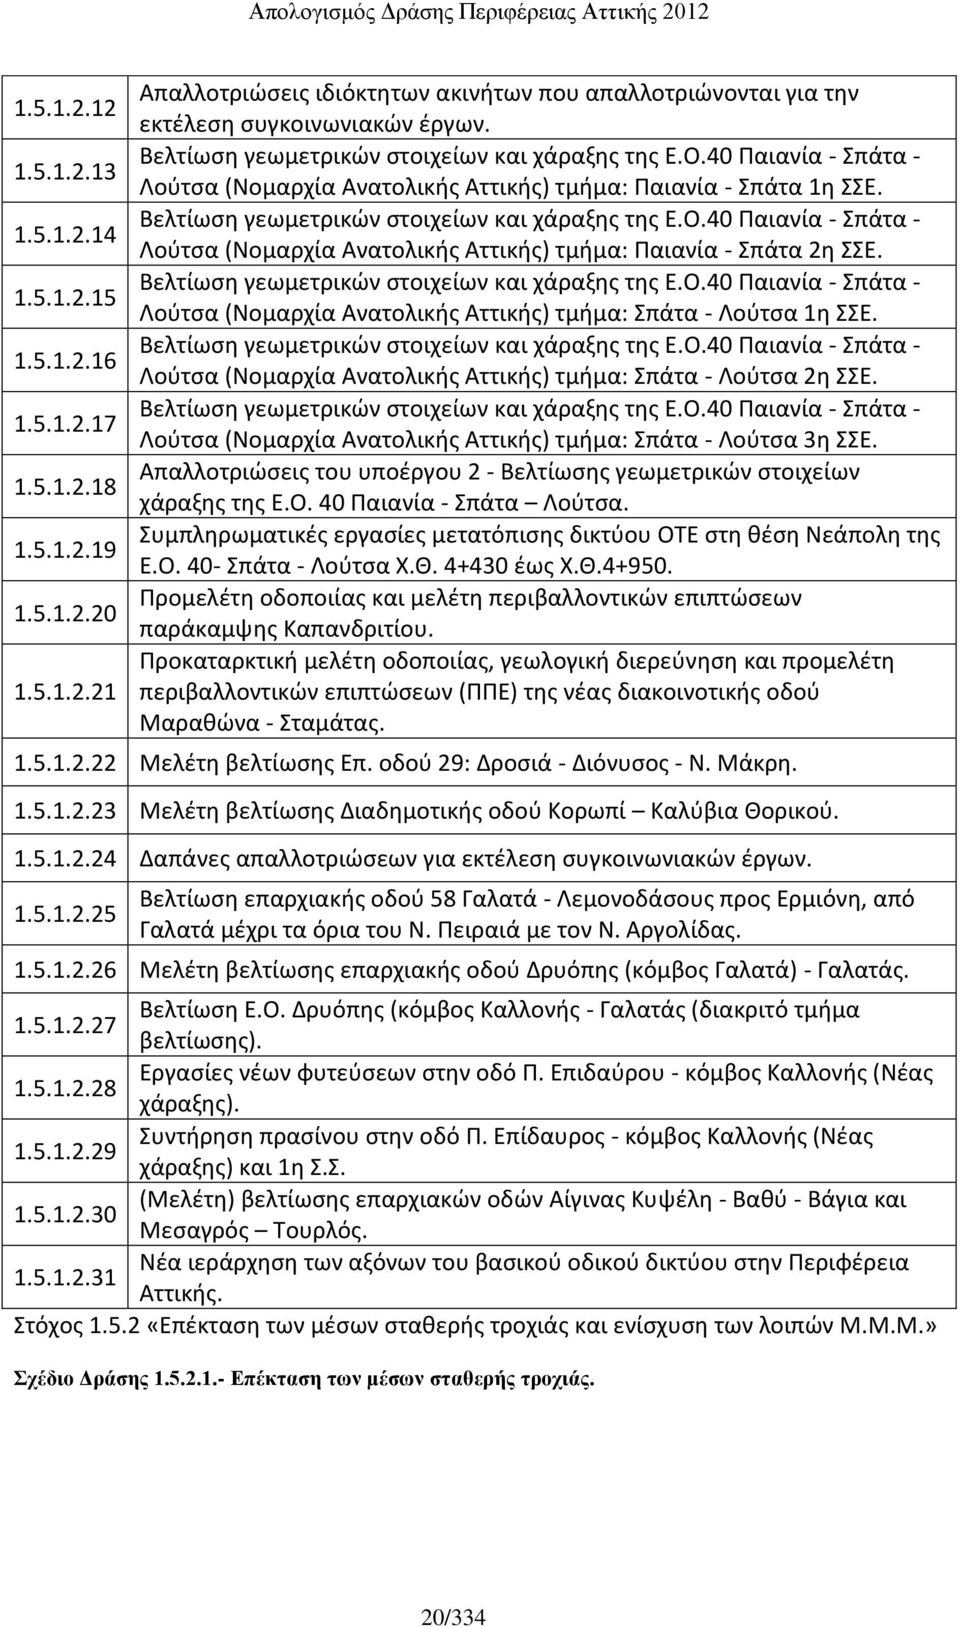 Βελτίωση γεωμετρικών στοιχείων και χάραξης της Ε.Ο.40 Παιανία - Σπάτα - Λούτσα (Νομαρχία Ανατολικής Αττικής) τμήμα: Σπάτα - Λούτσα 1η ΣΣΕ. Βελτίωση γεωμετρικών στοιχείων και χάραξης της Ε.Ο.40 Παιανία - Σπάτα - Λούτσα (Νομαρχία Ανατολικής Αττικής) τμήμα: Σπάτα - Λούτσα 2η ΣΣΕ.